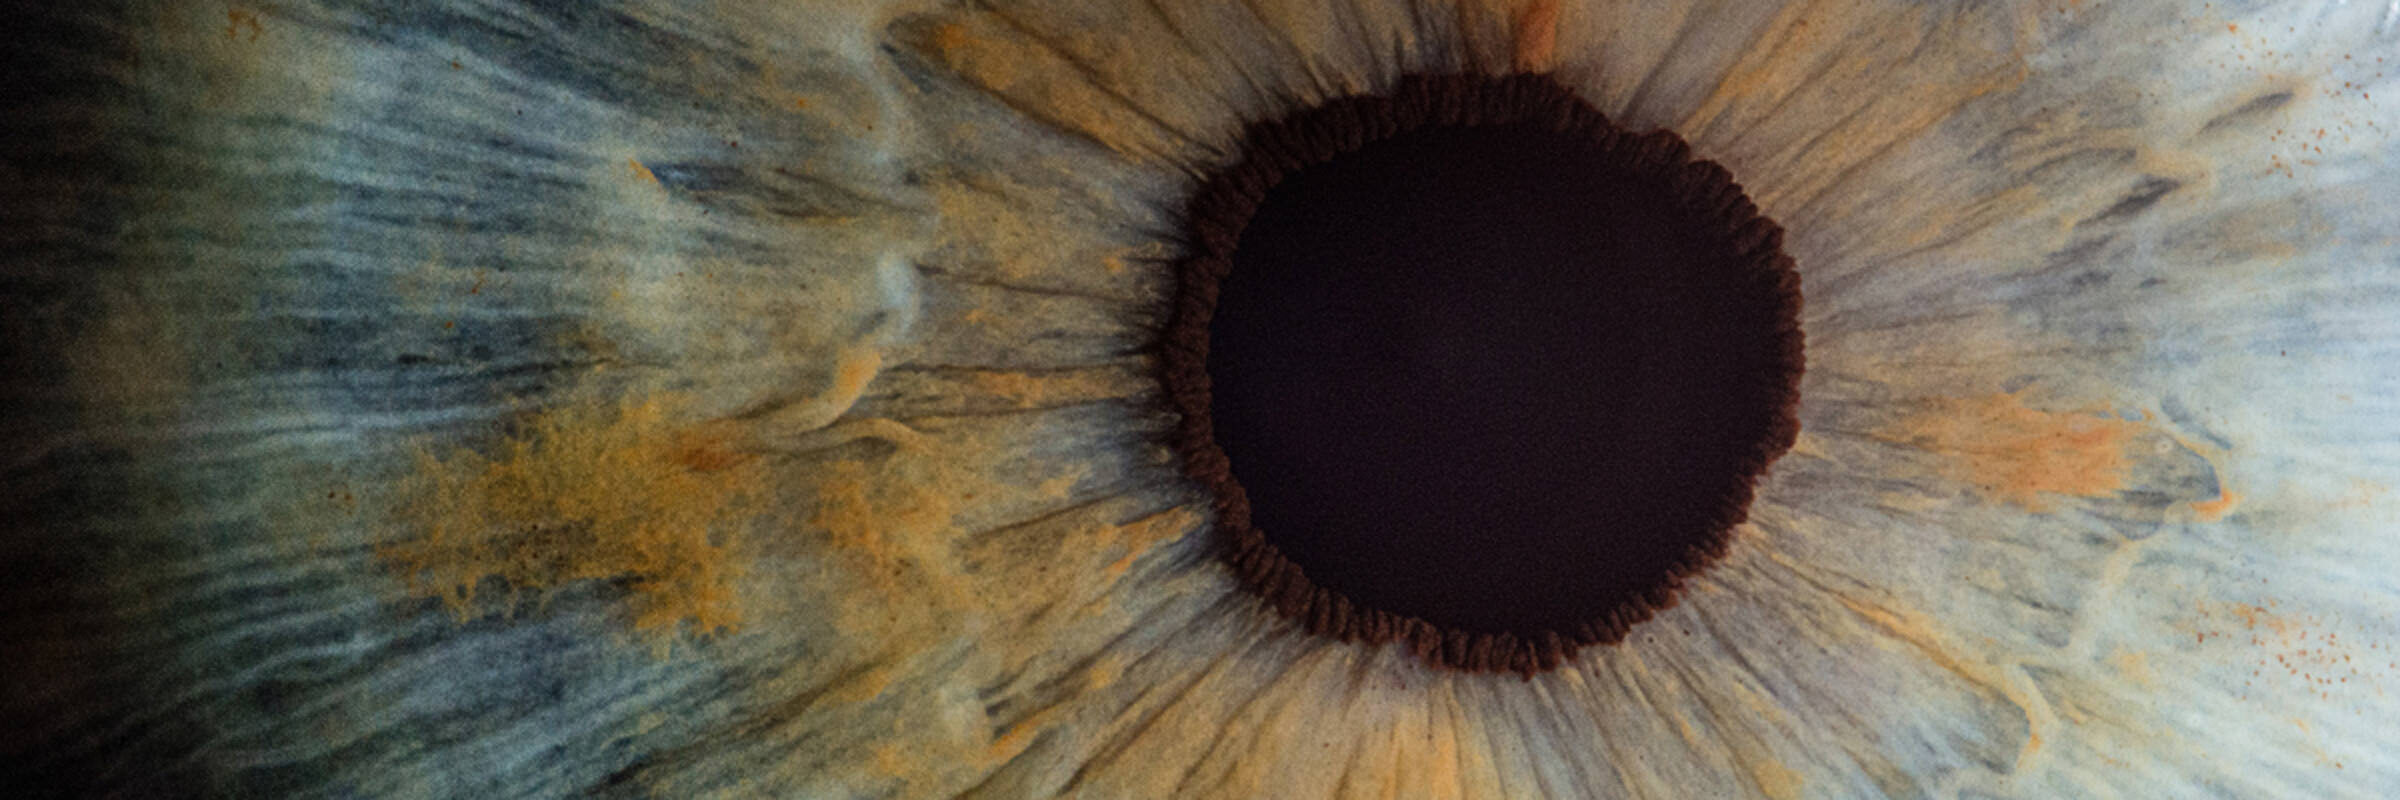 Foto zeigt Iris und Pupille eines Auges